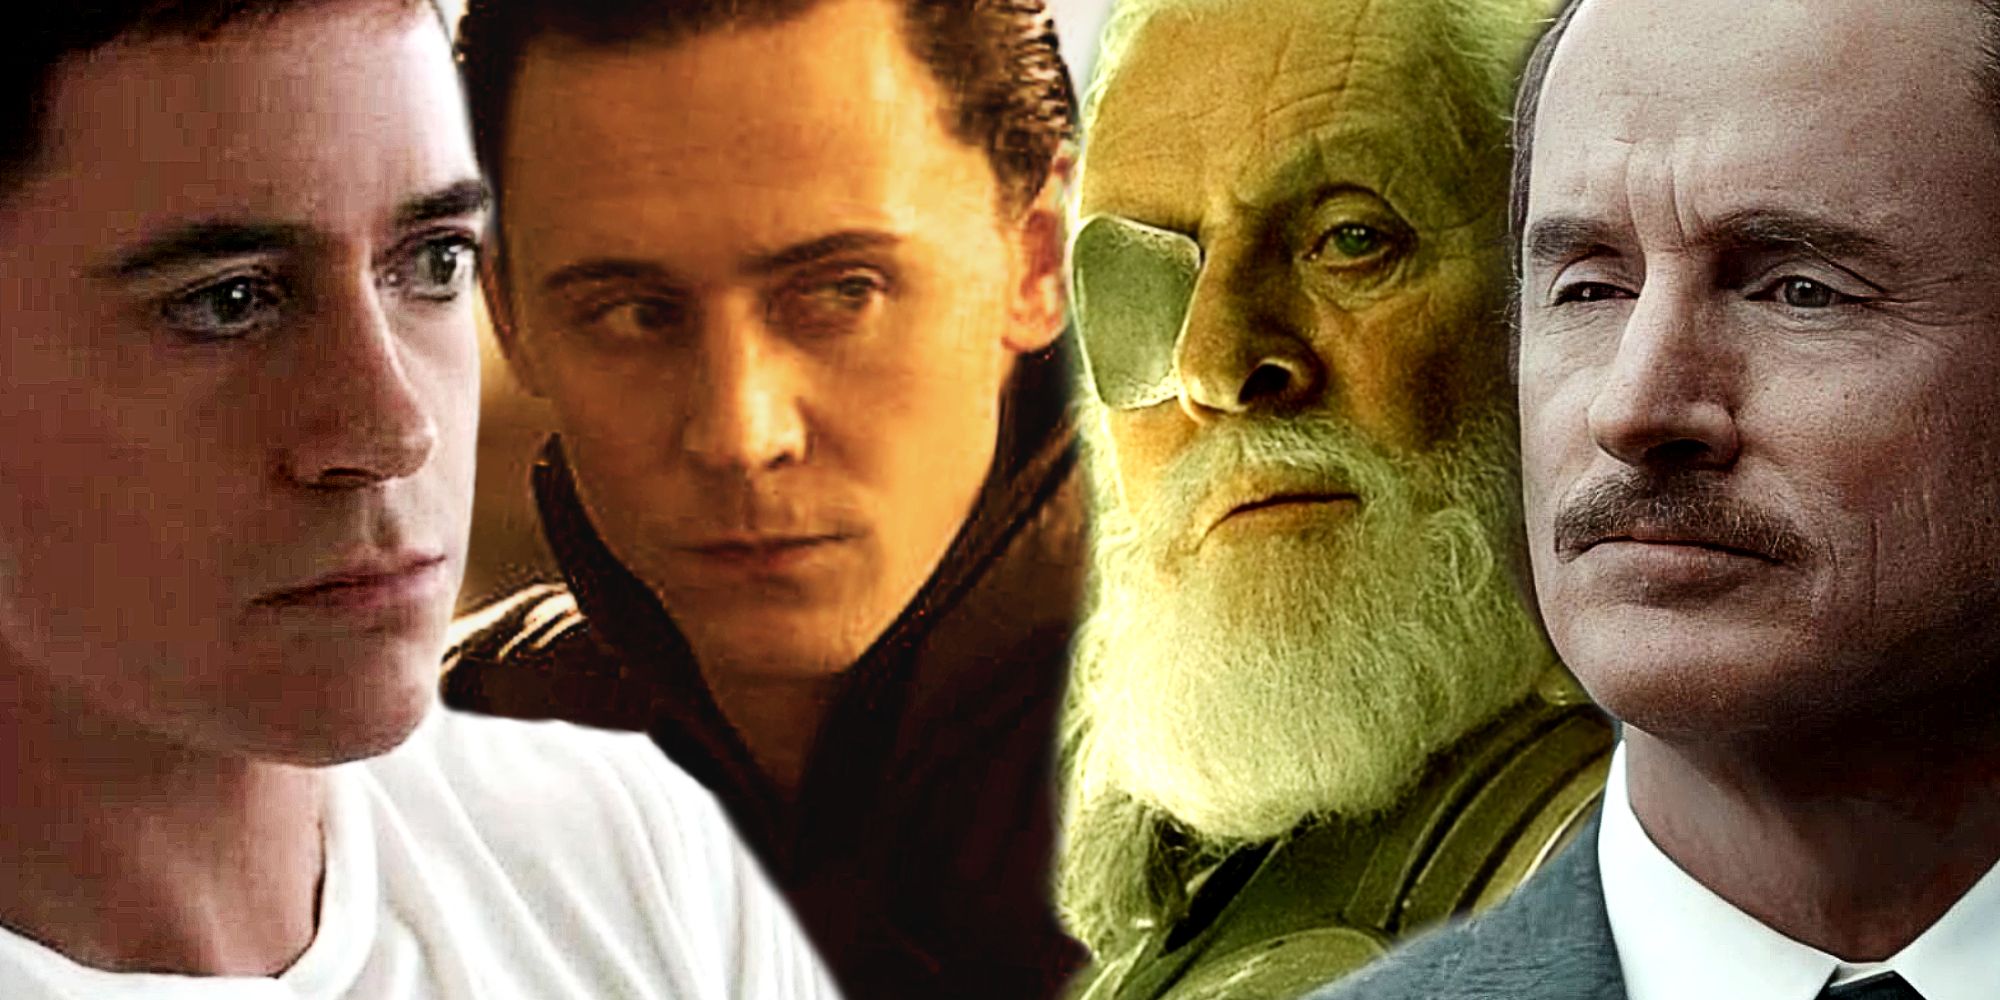 Tony Stark, Loki, Odin, and Howard Stark in the MCU